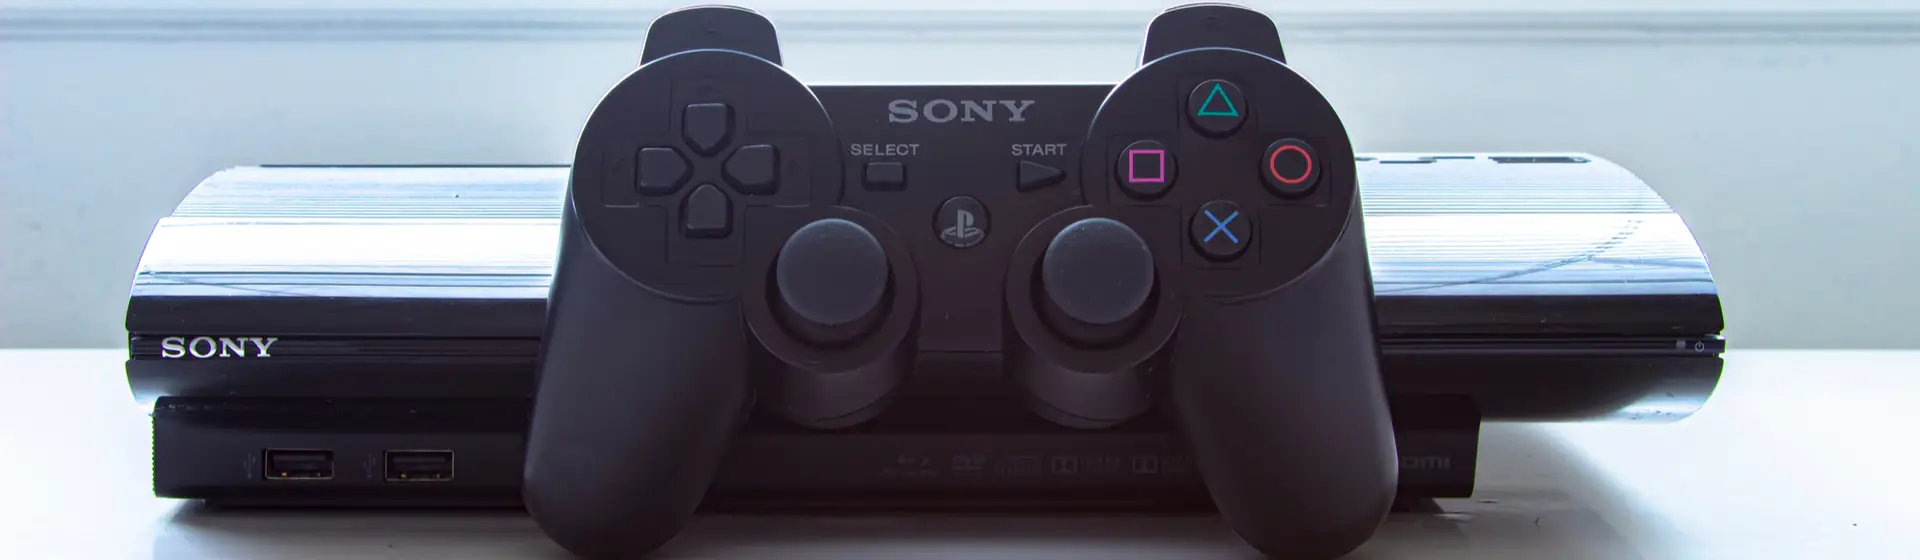 Um PS3 com controle, dispostos sobre uma mesa branca.